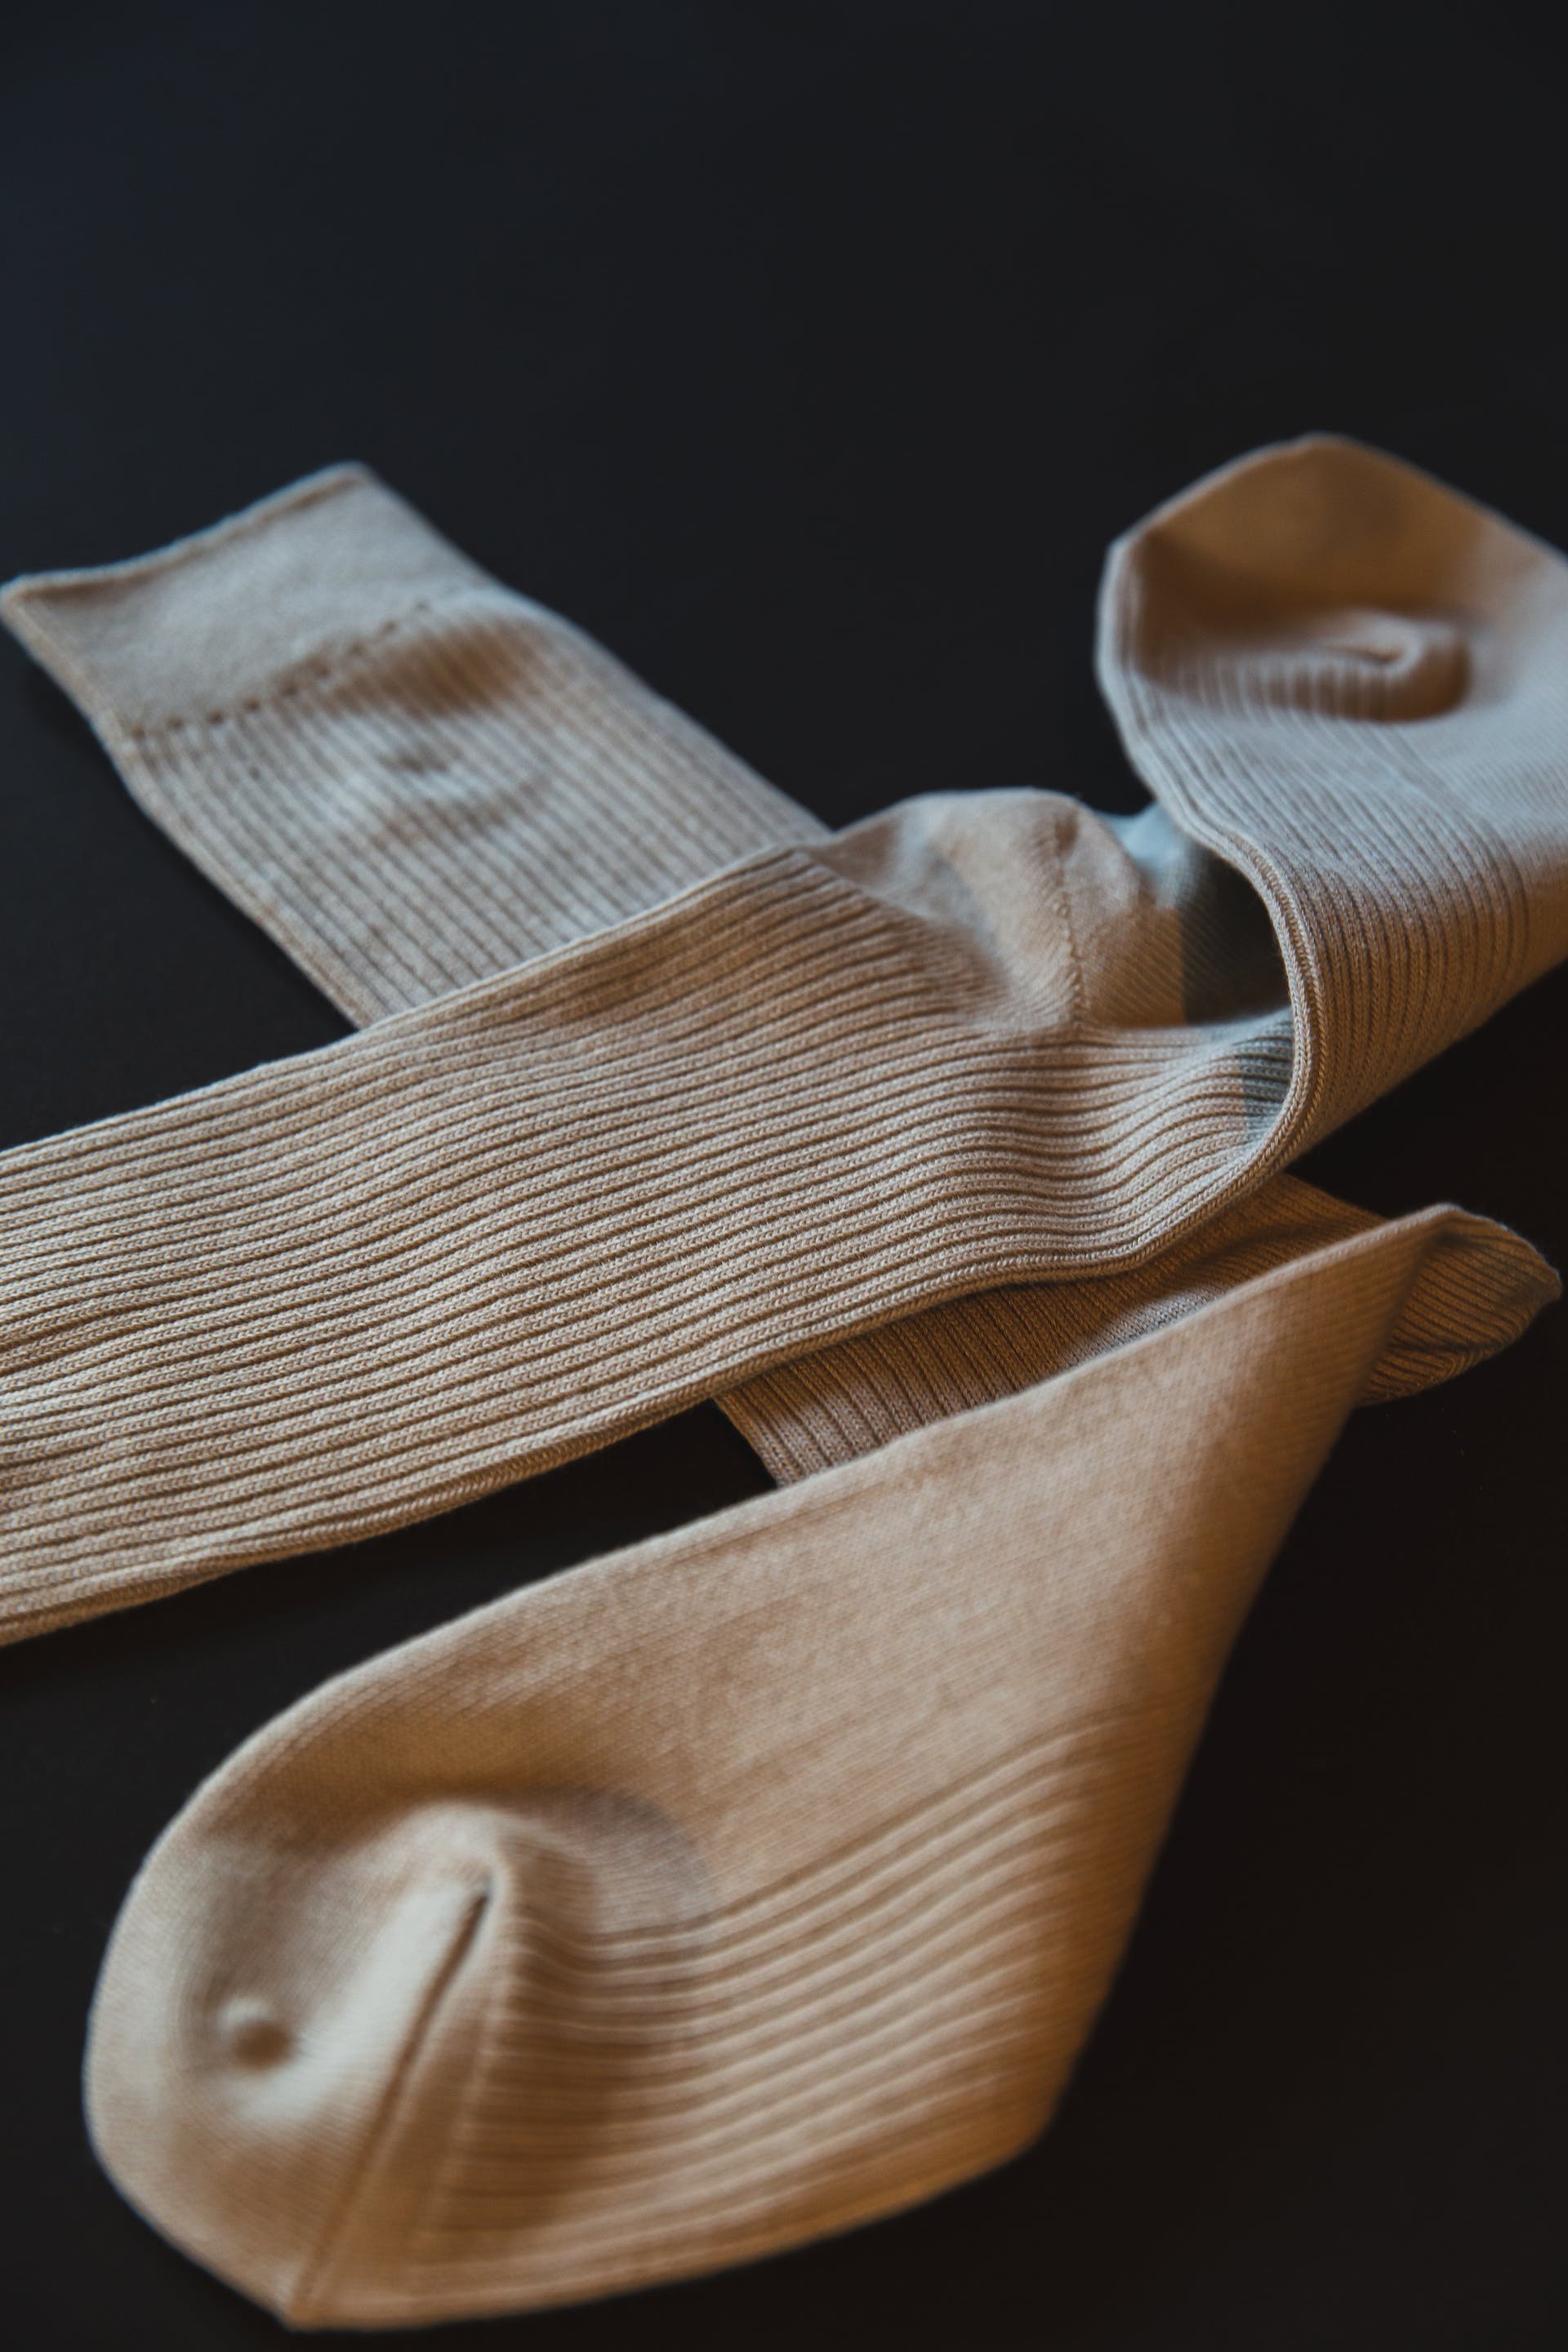 A pair of socks | Source: Pexels